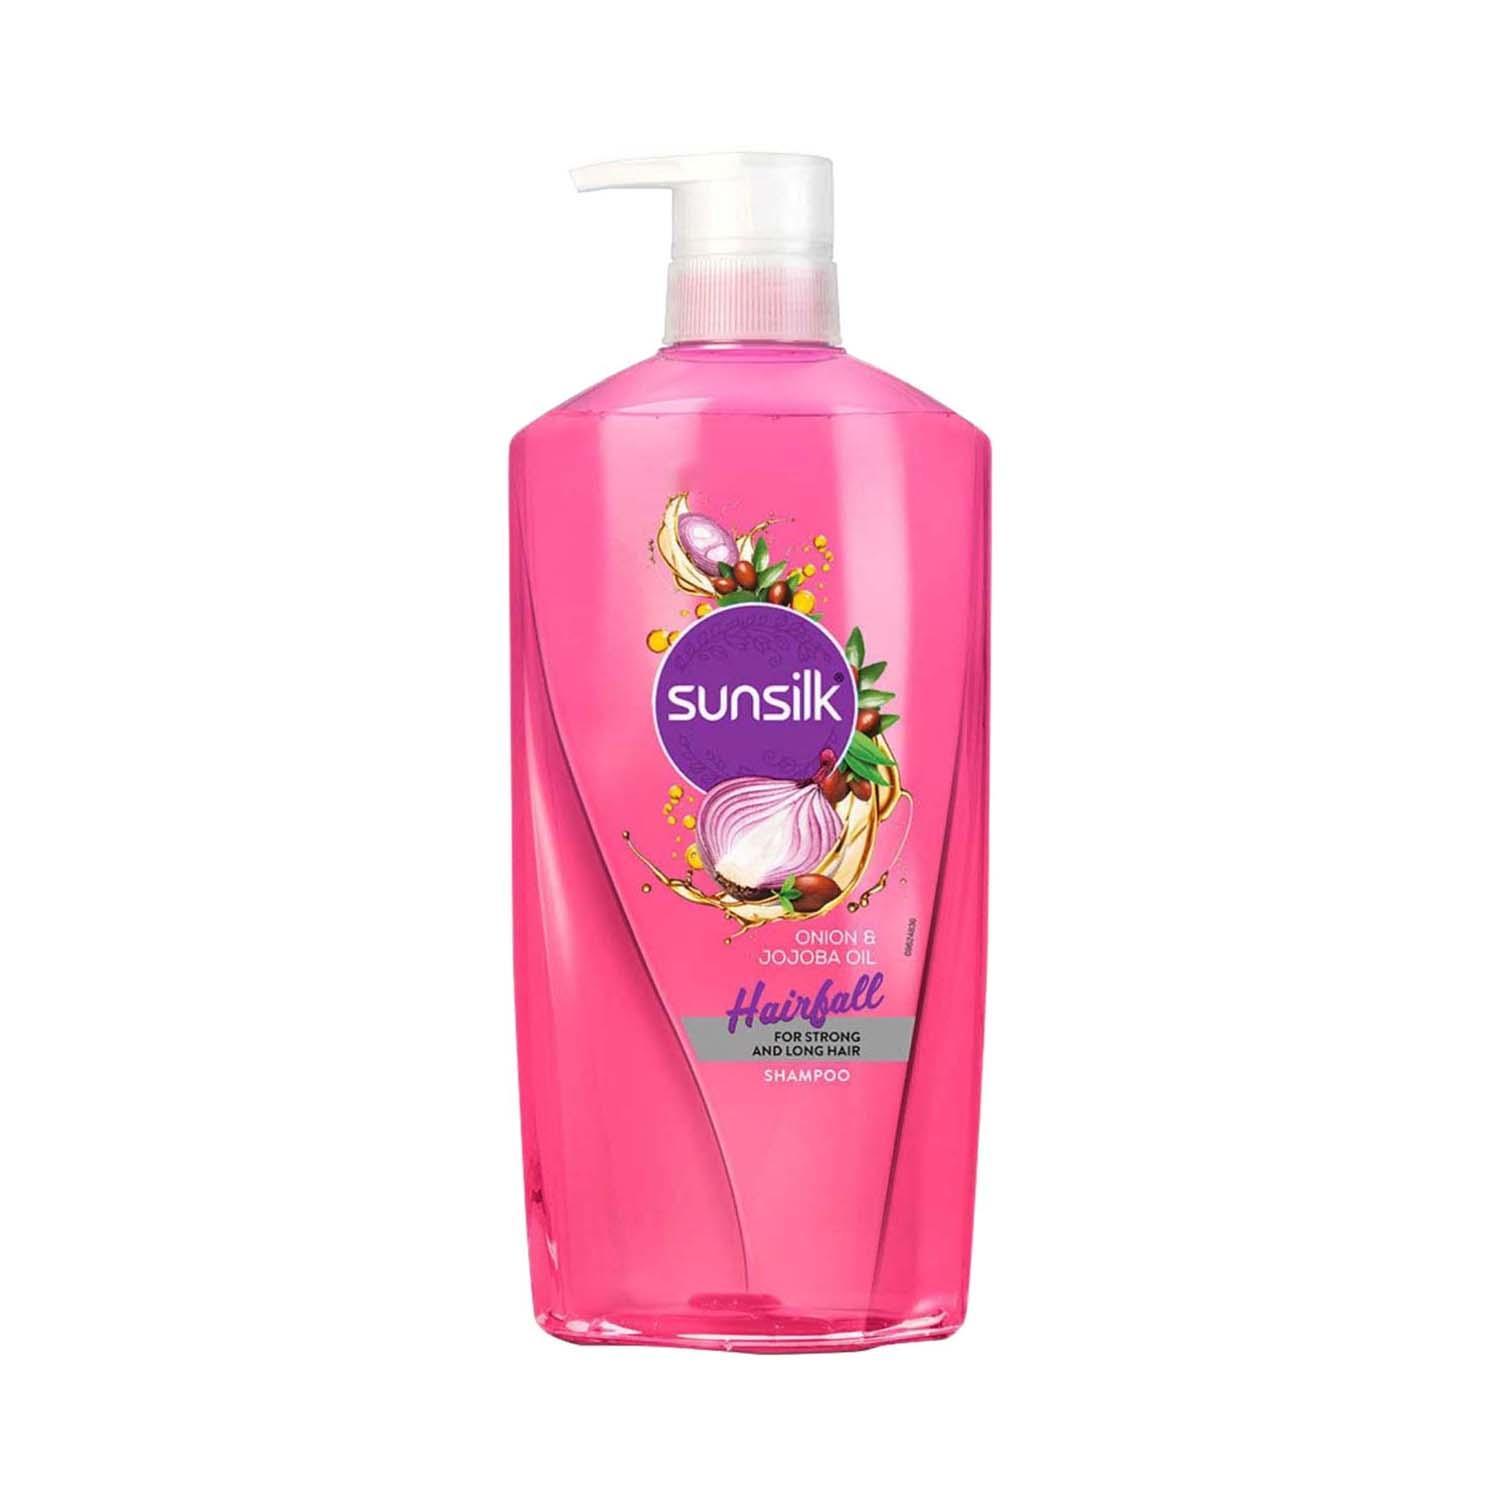 sunsilk onion & jojoba oil hairfall shampoo (700 ml)